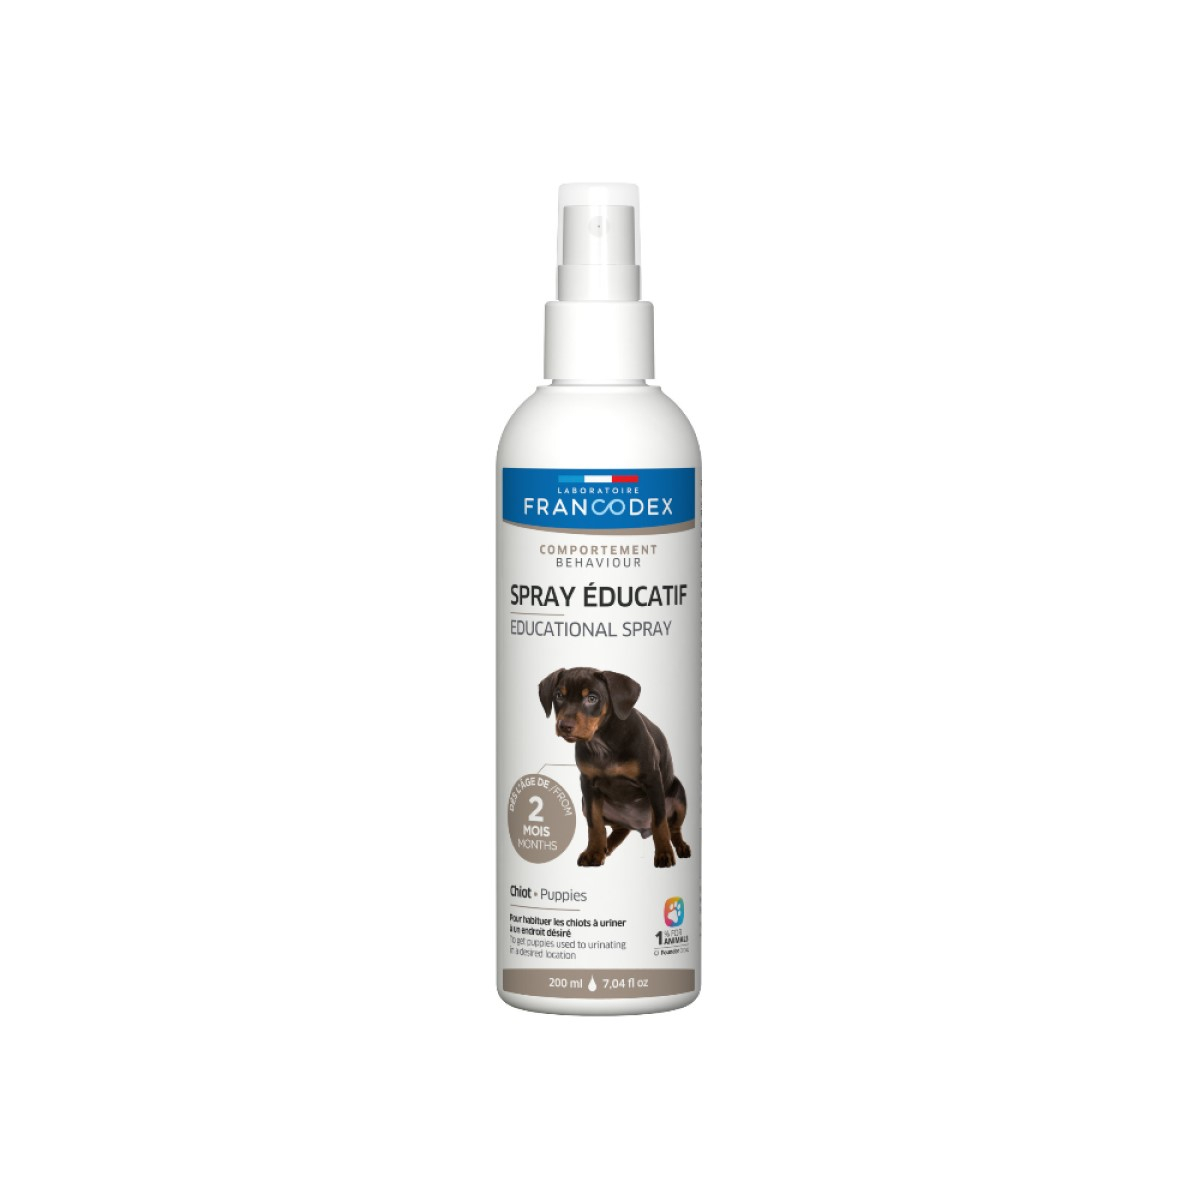 Francodex Spray Educativo para Cachorros